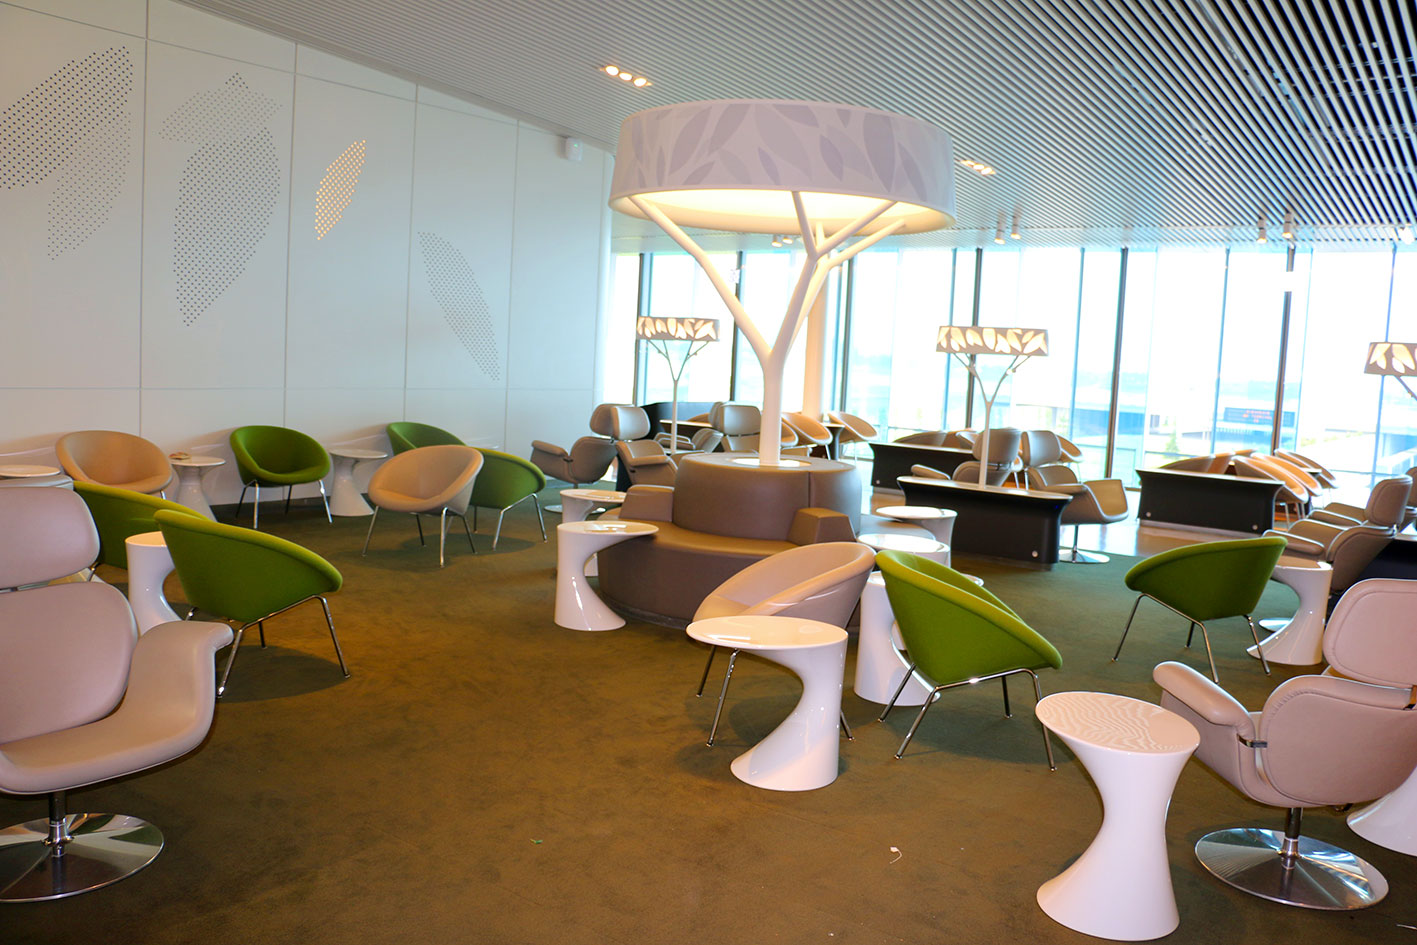 Le salon lounge d'Air France esr inspiré d’un parc, il offre la possibilité de se reposer, de se restaurer, de travailler, de lire et de se divertir dans différentes ambiances.